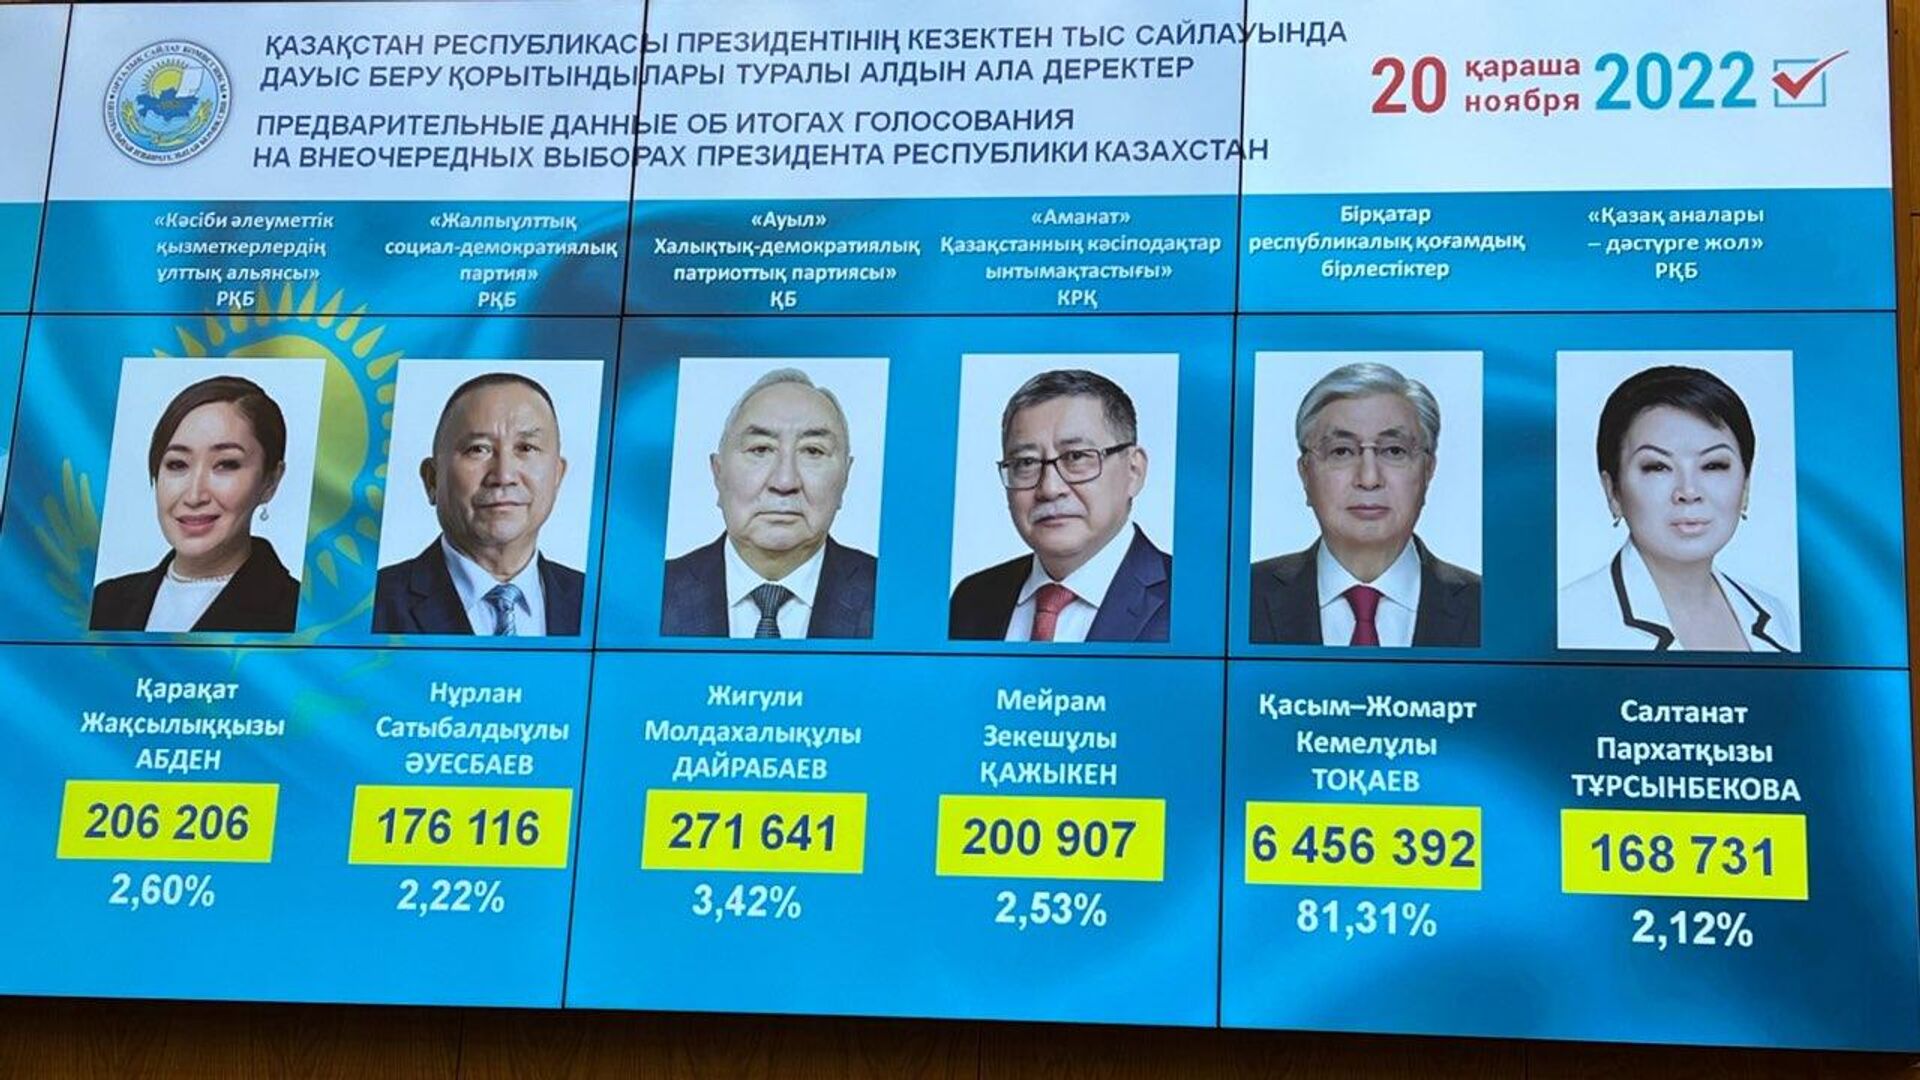 Итоги голосования выбора президента 2024. Выборы в Казахстане в 2022. Президентские выборы в Казахстане 2022.